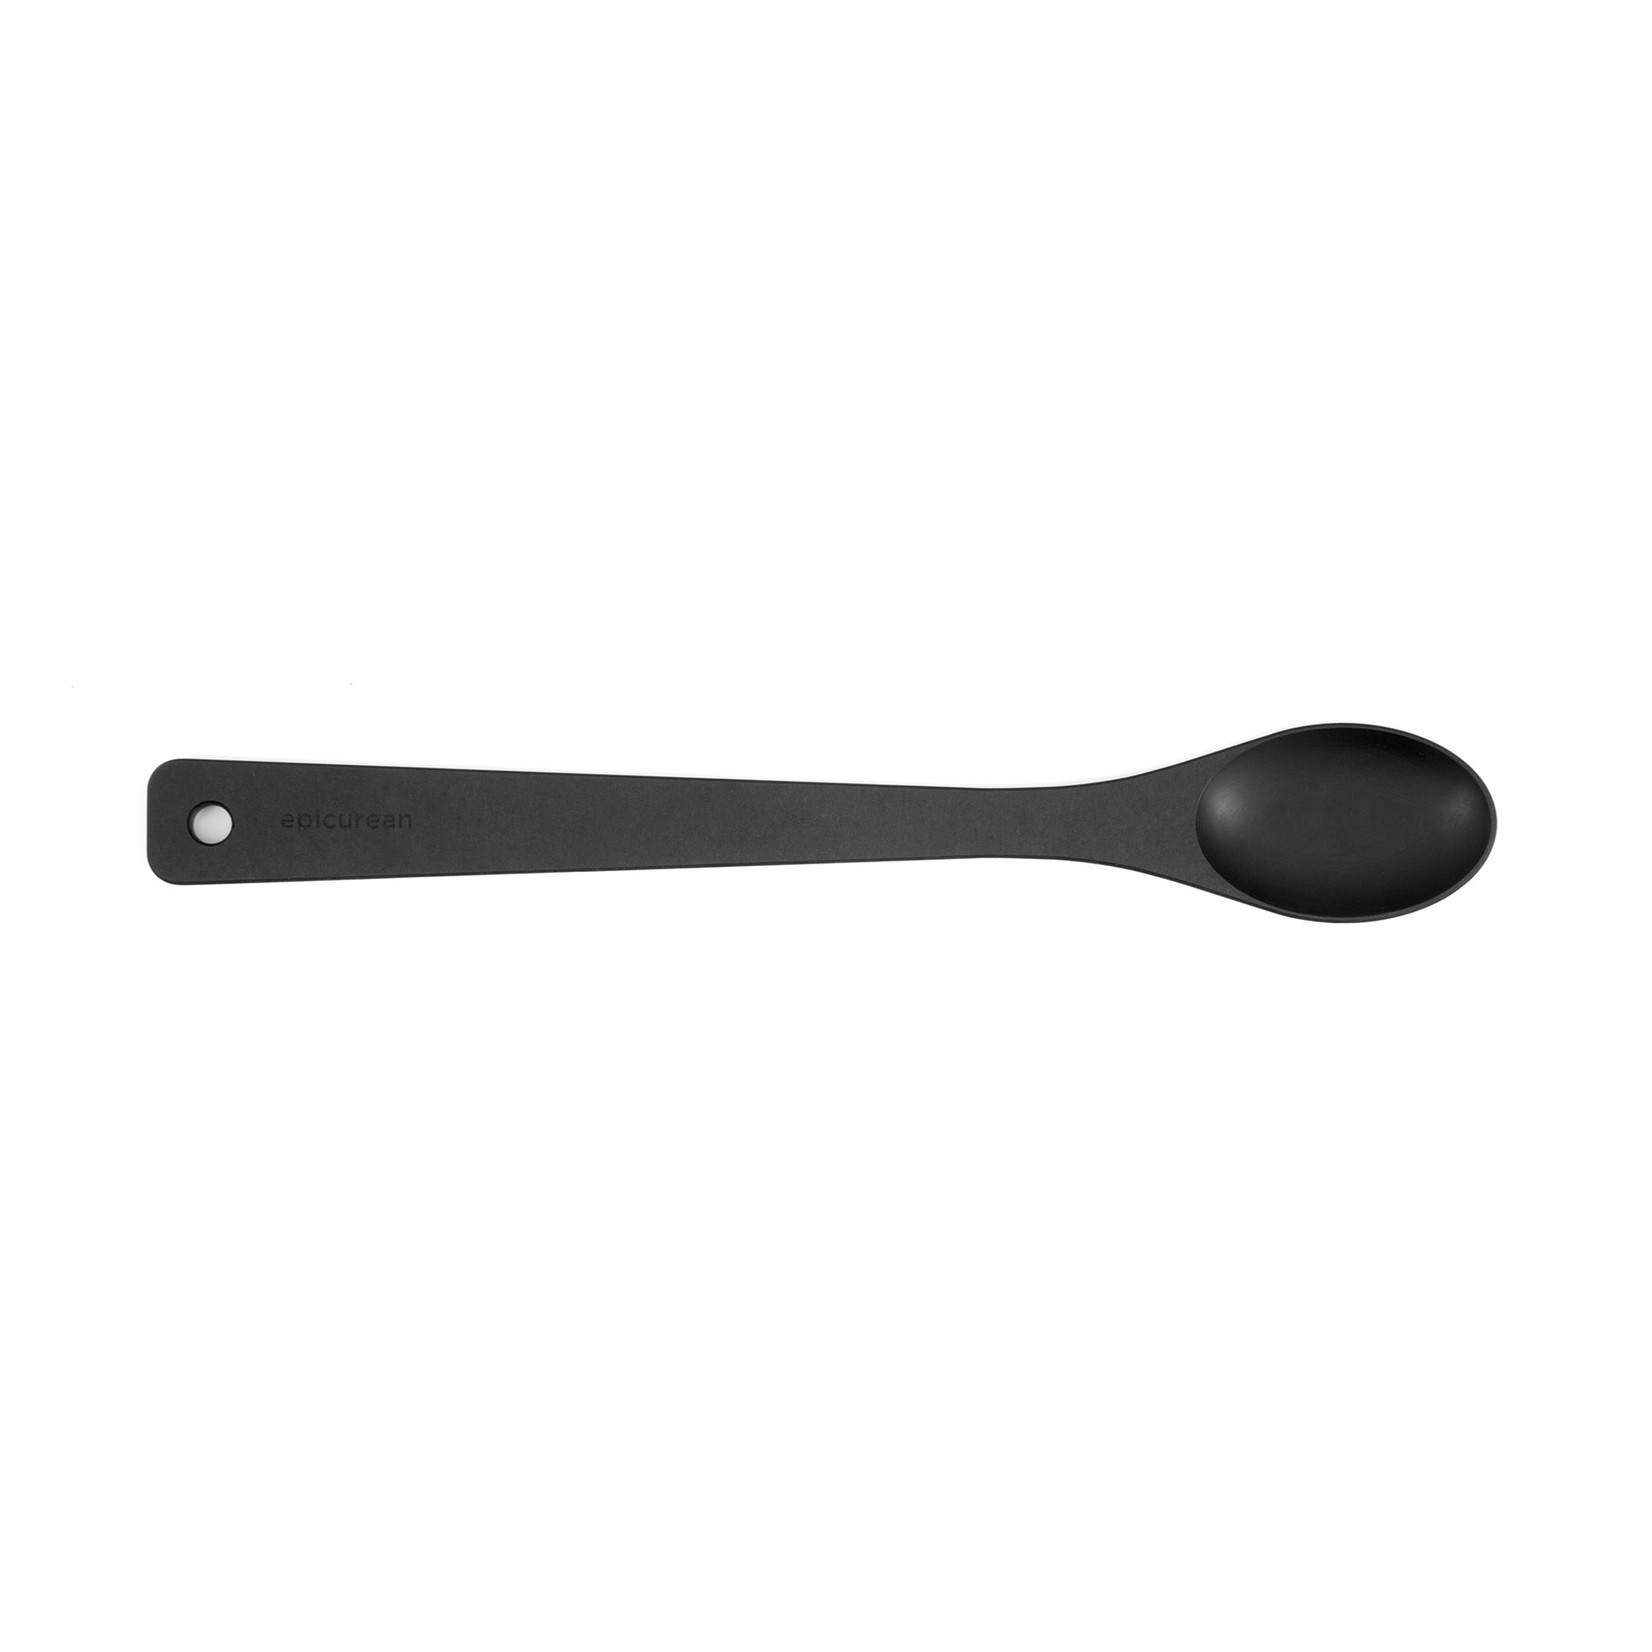 Epicurean Chef Series Utensils - Small Spoon - Slate/Black